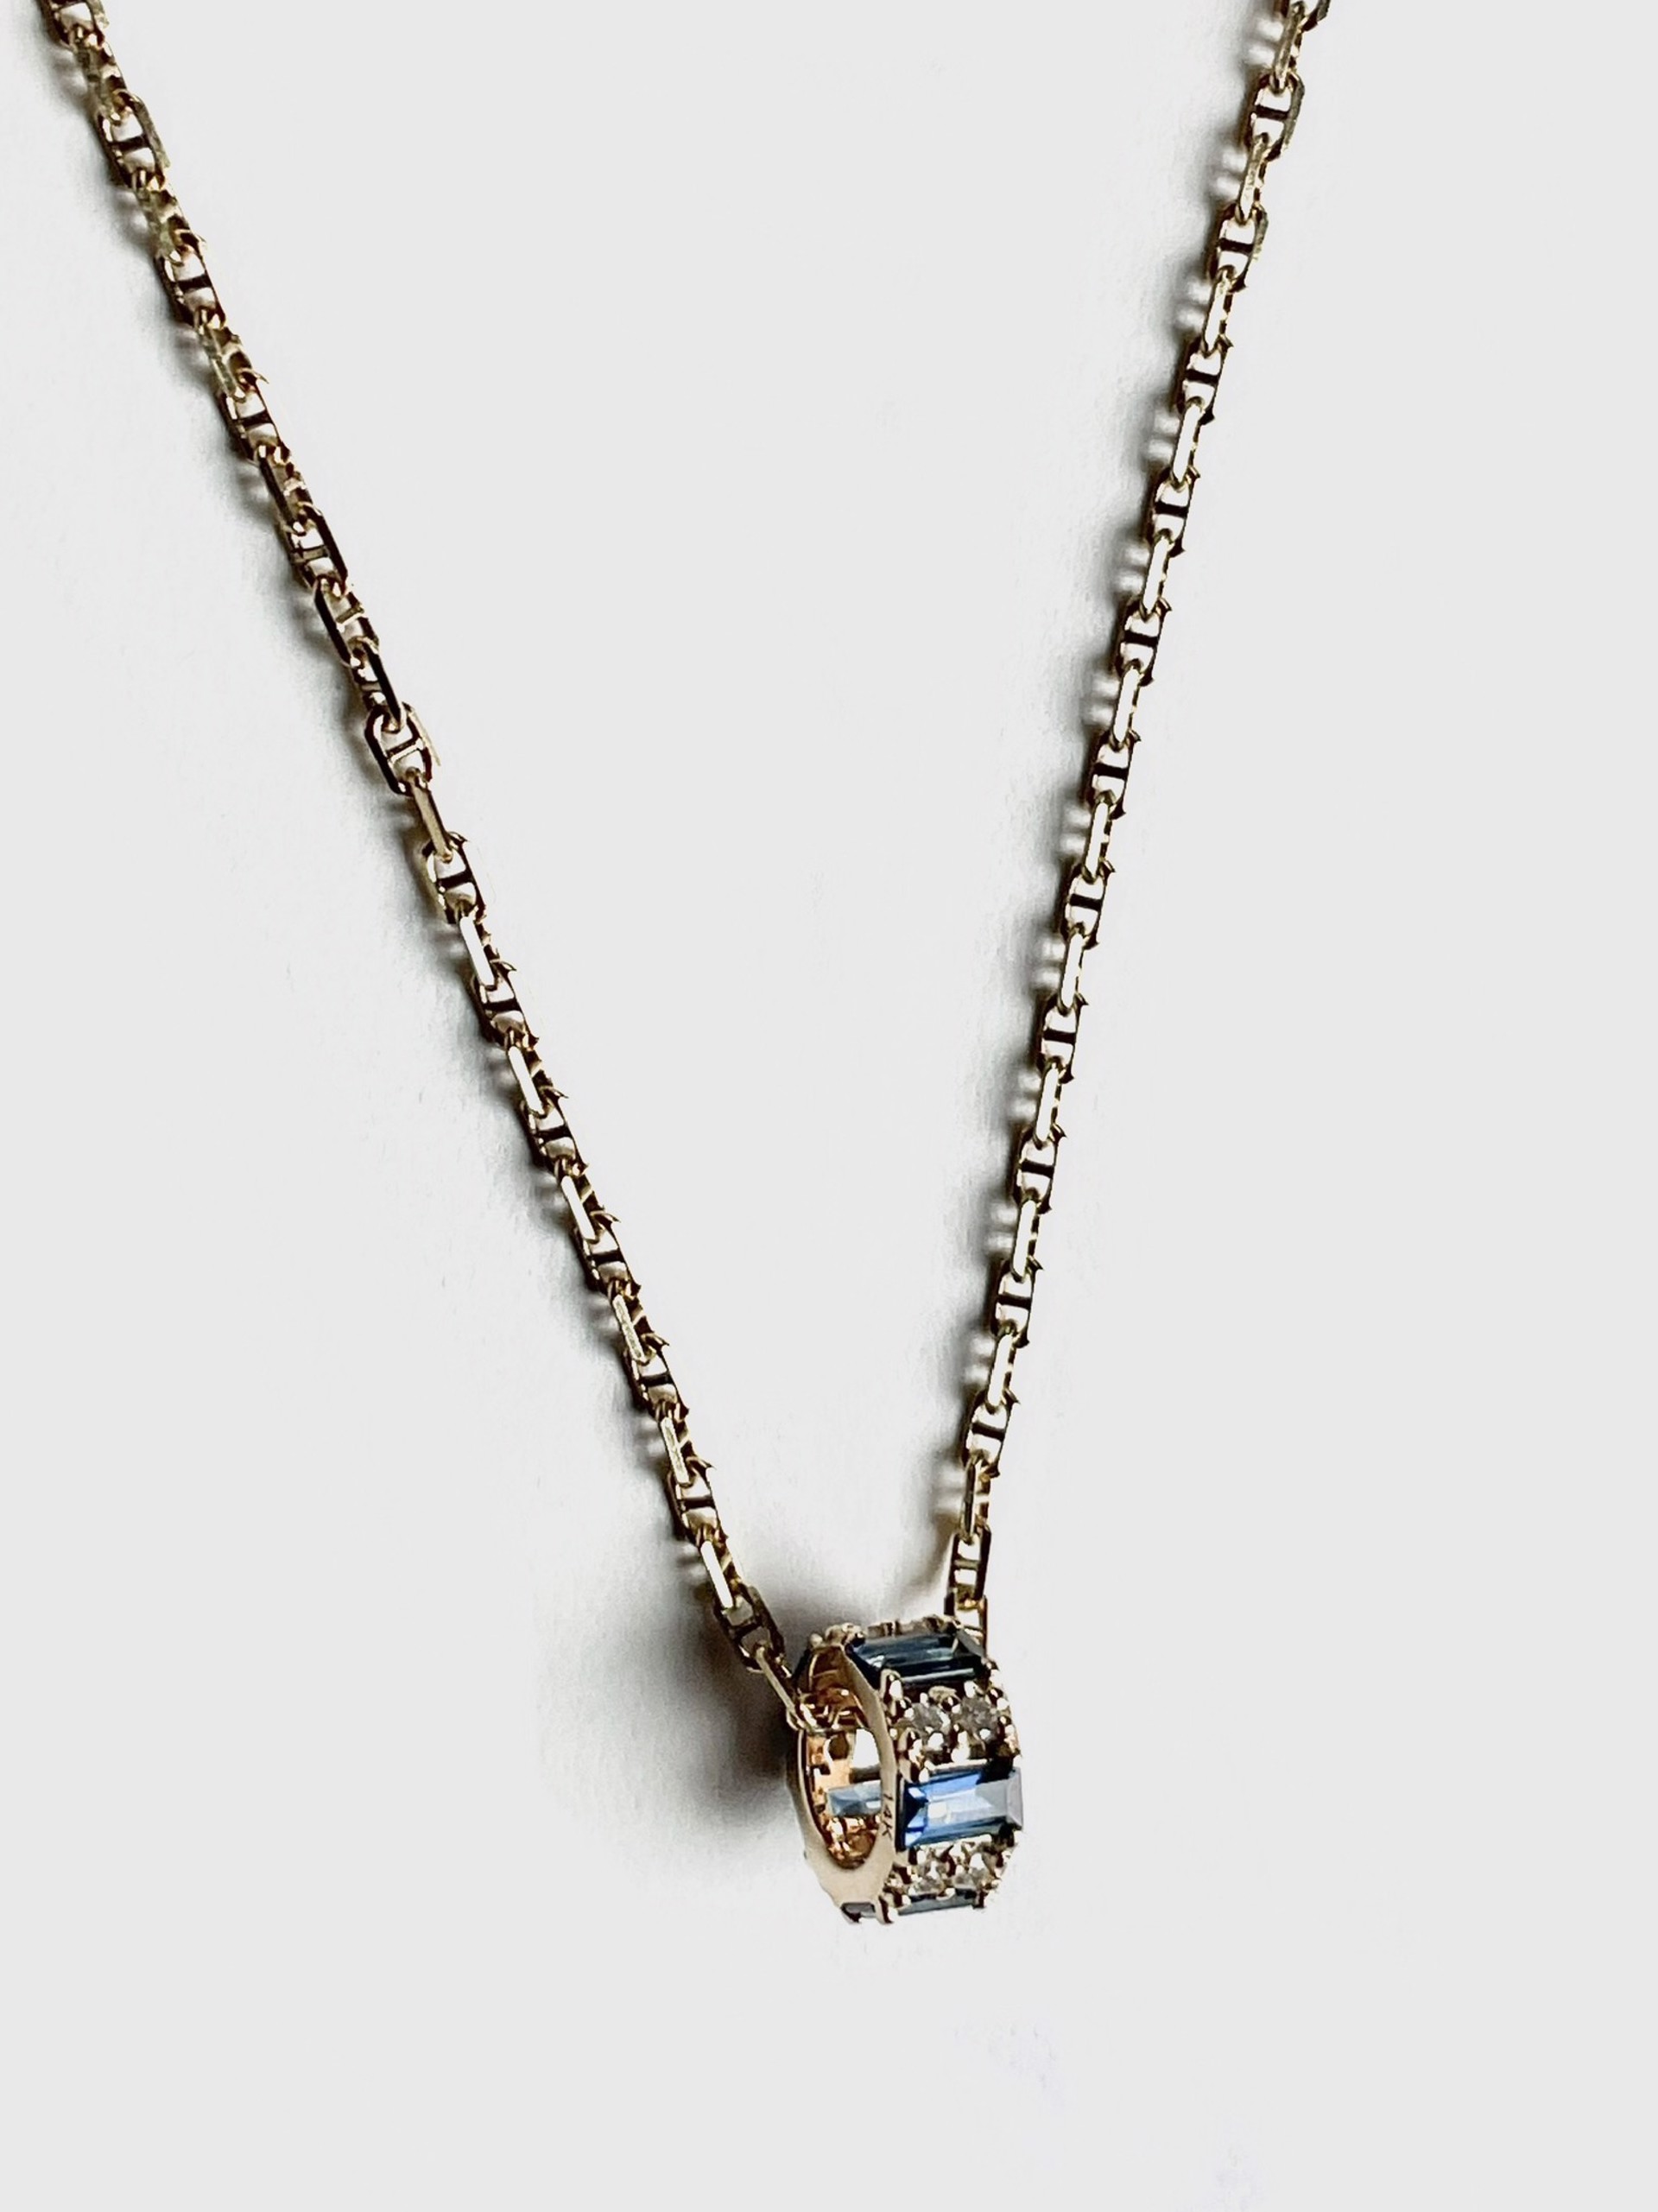 KB-N104 14K Gold Gucci-style Chain Diamond/Sapphire Circular Pendant by Karen Birchmier